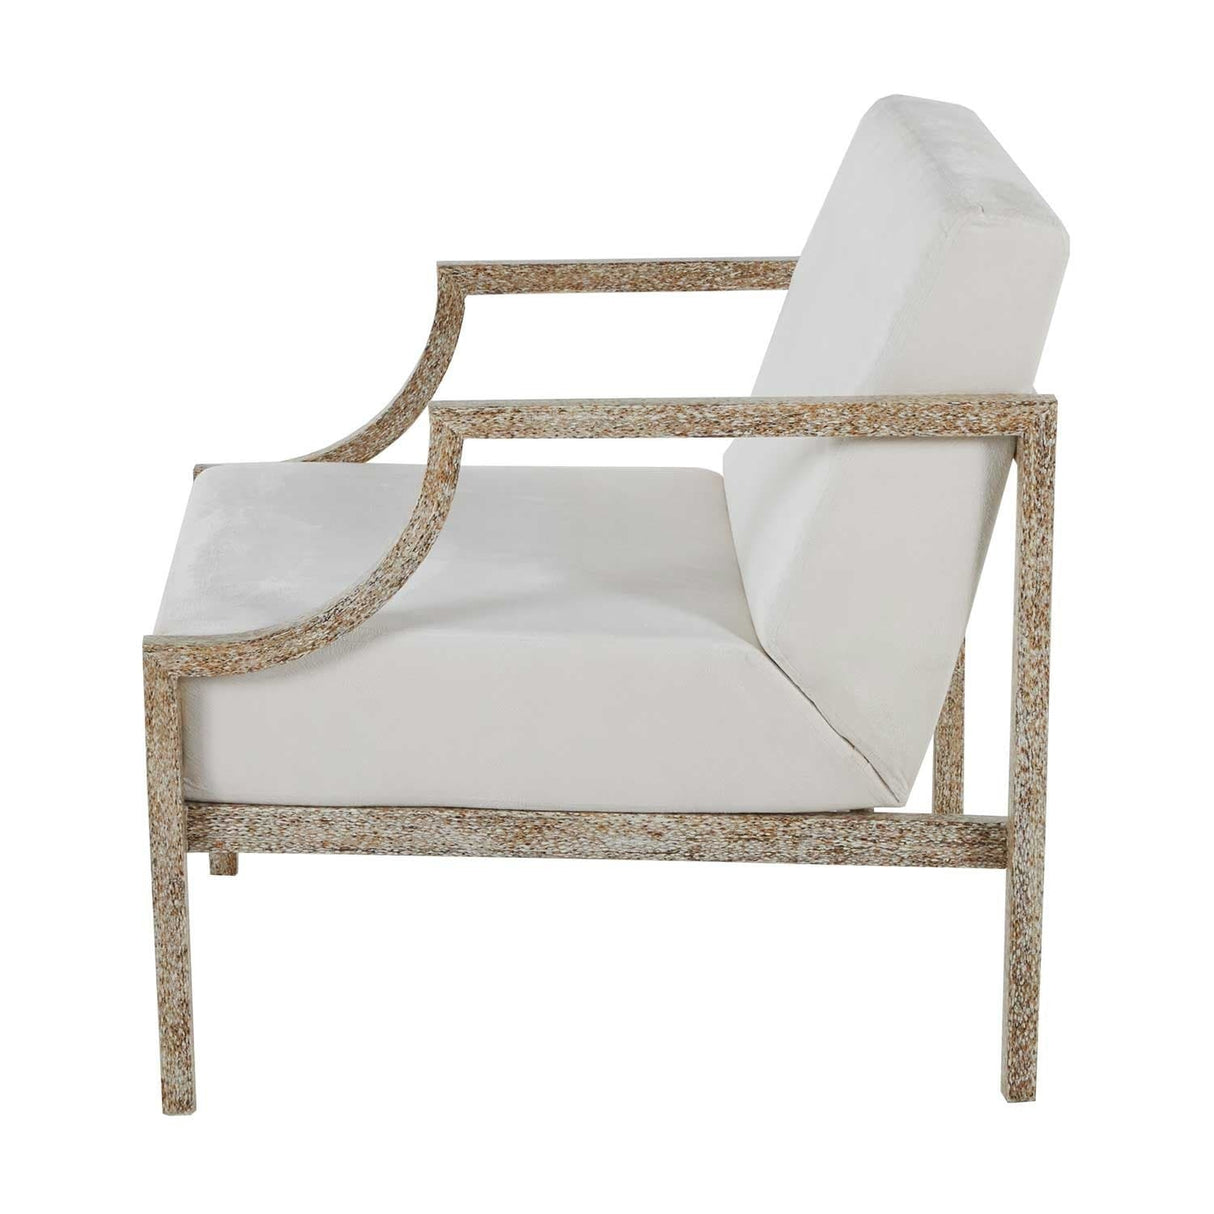 Gabby Zilar 18" Lounge Chair Furniture gabby-SCH-192371